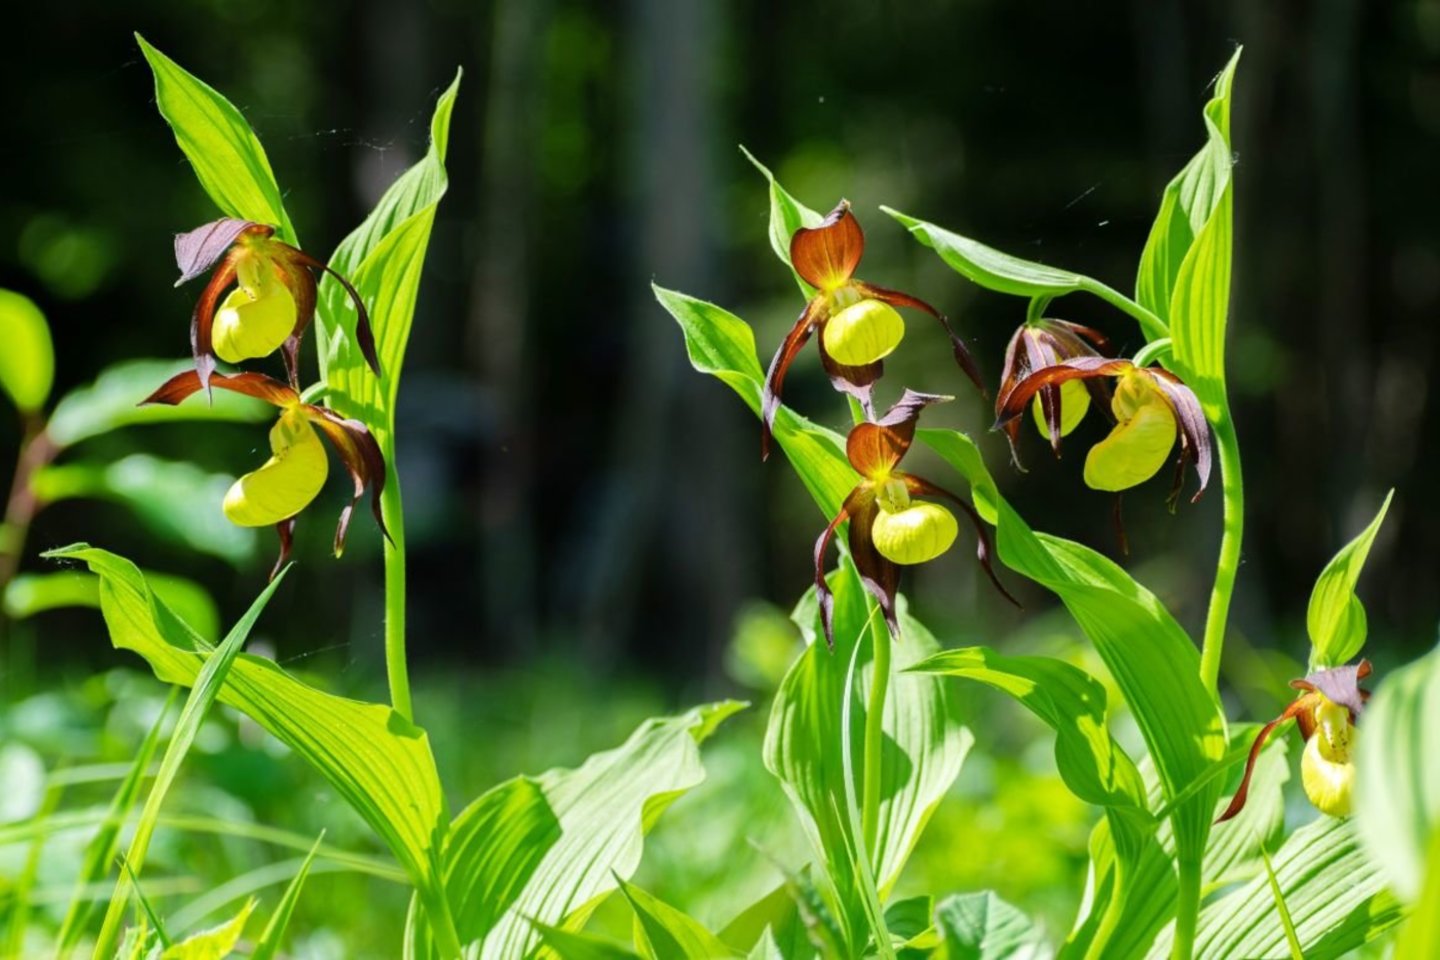 Neseniai kėdainietis užfiksavo žydintį vieną rečiausių Europos augalų – lietuviškąja orchidėja vadinamą plačialapę klumpaitę.<br>Asm. archyvo nuotr.